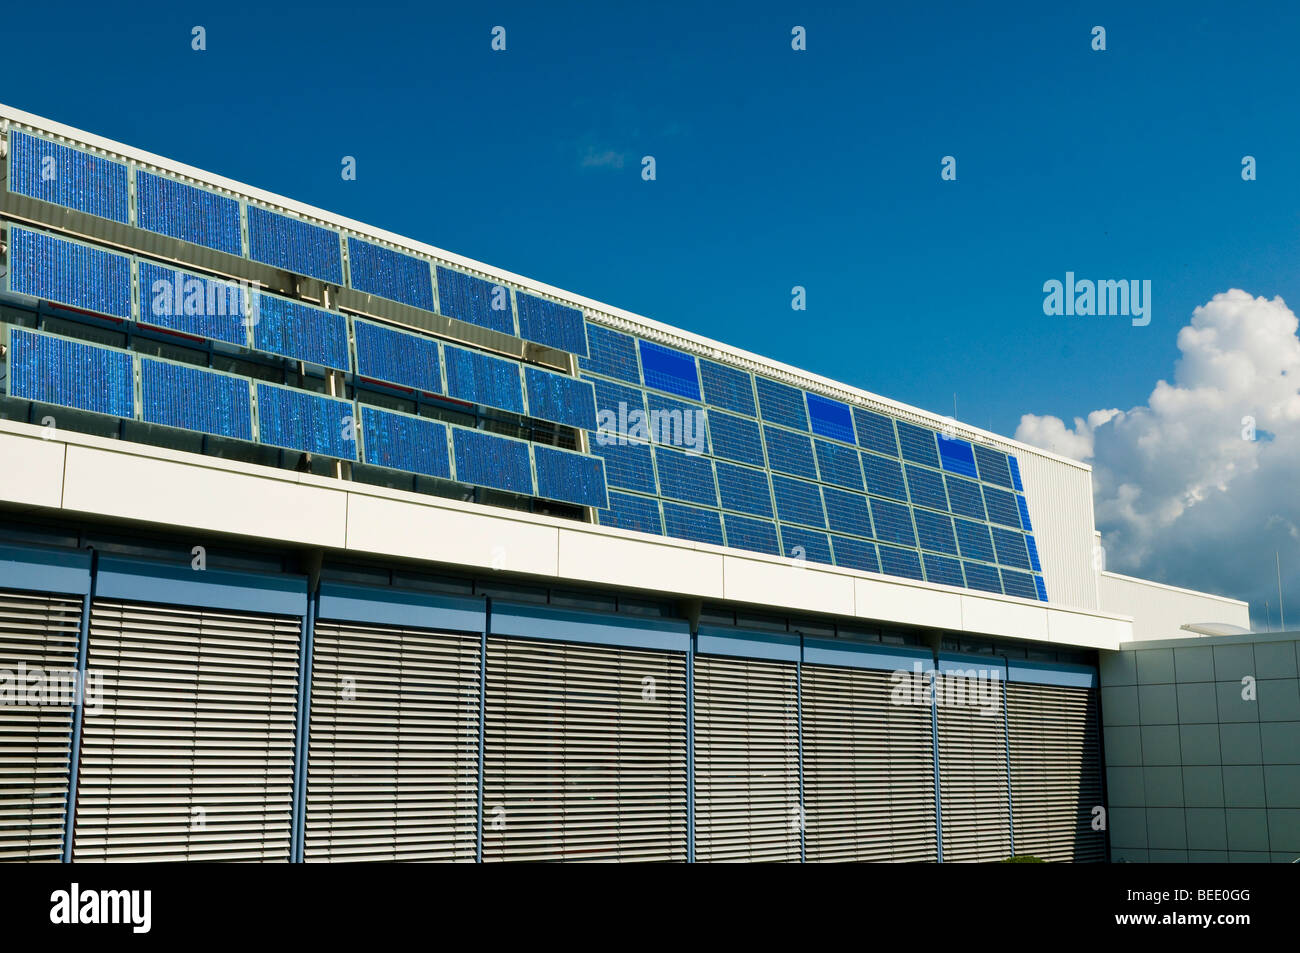 Solar panel facade Stock Photo